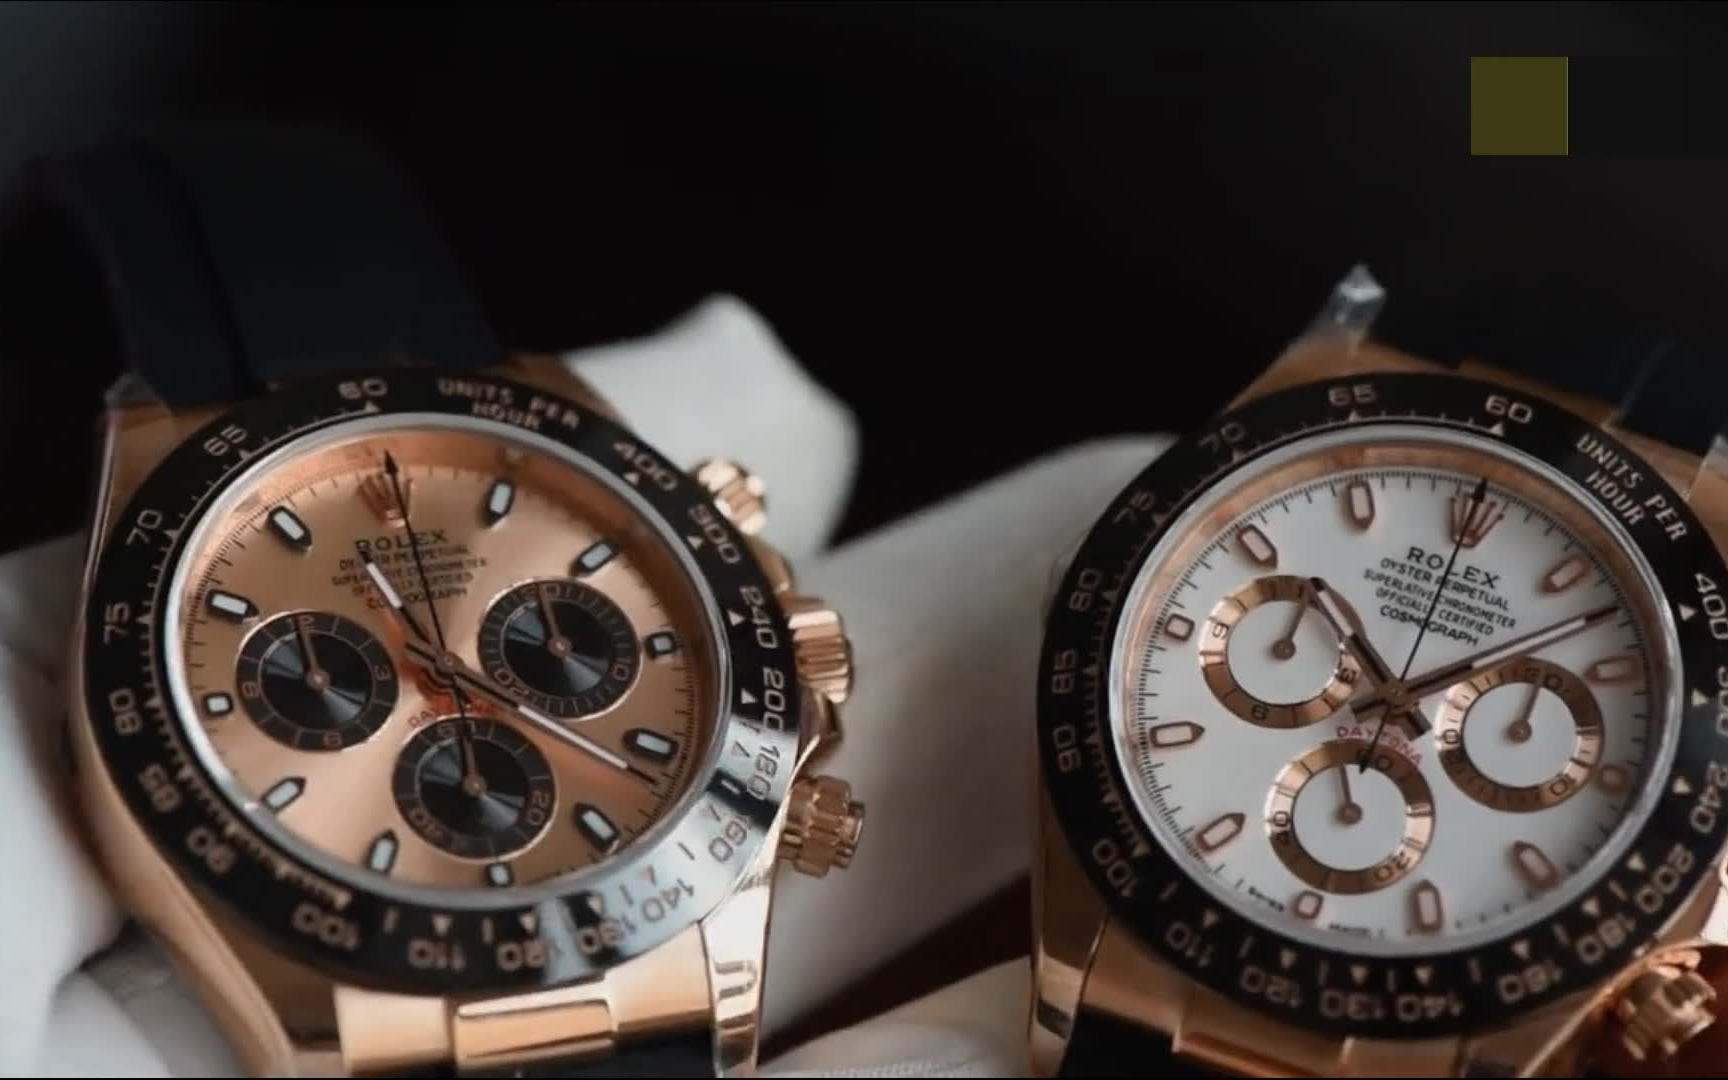 2、如果你一生只能拥有一只手表，你会选择哪个品牌？ 